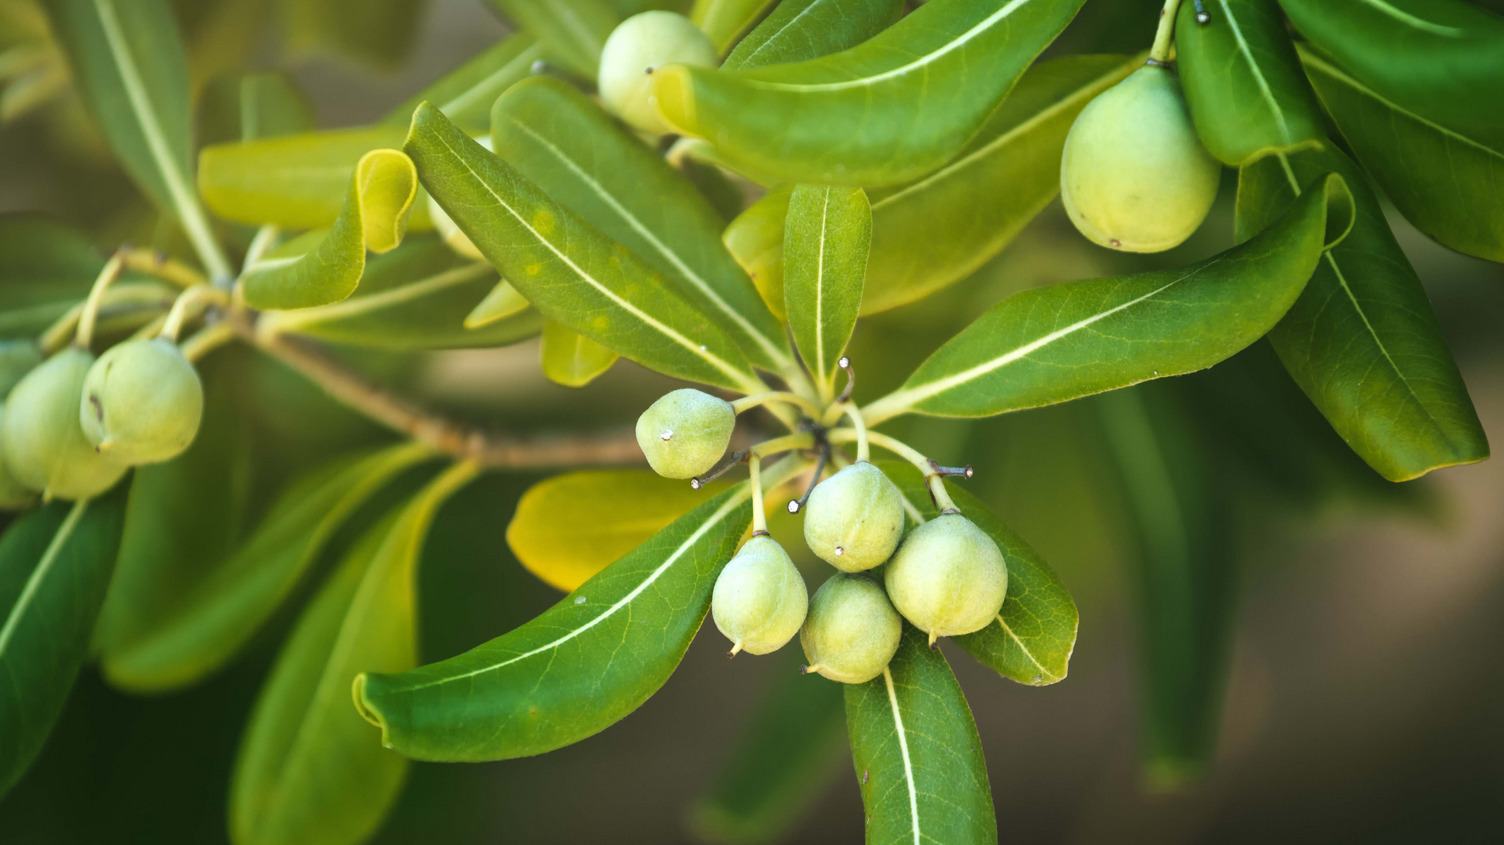 Olivenfrüchte und grüne Blätter hängen an einem Zweig